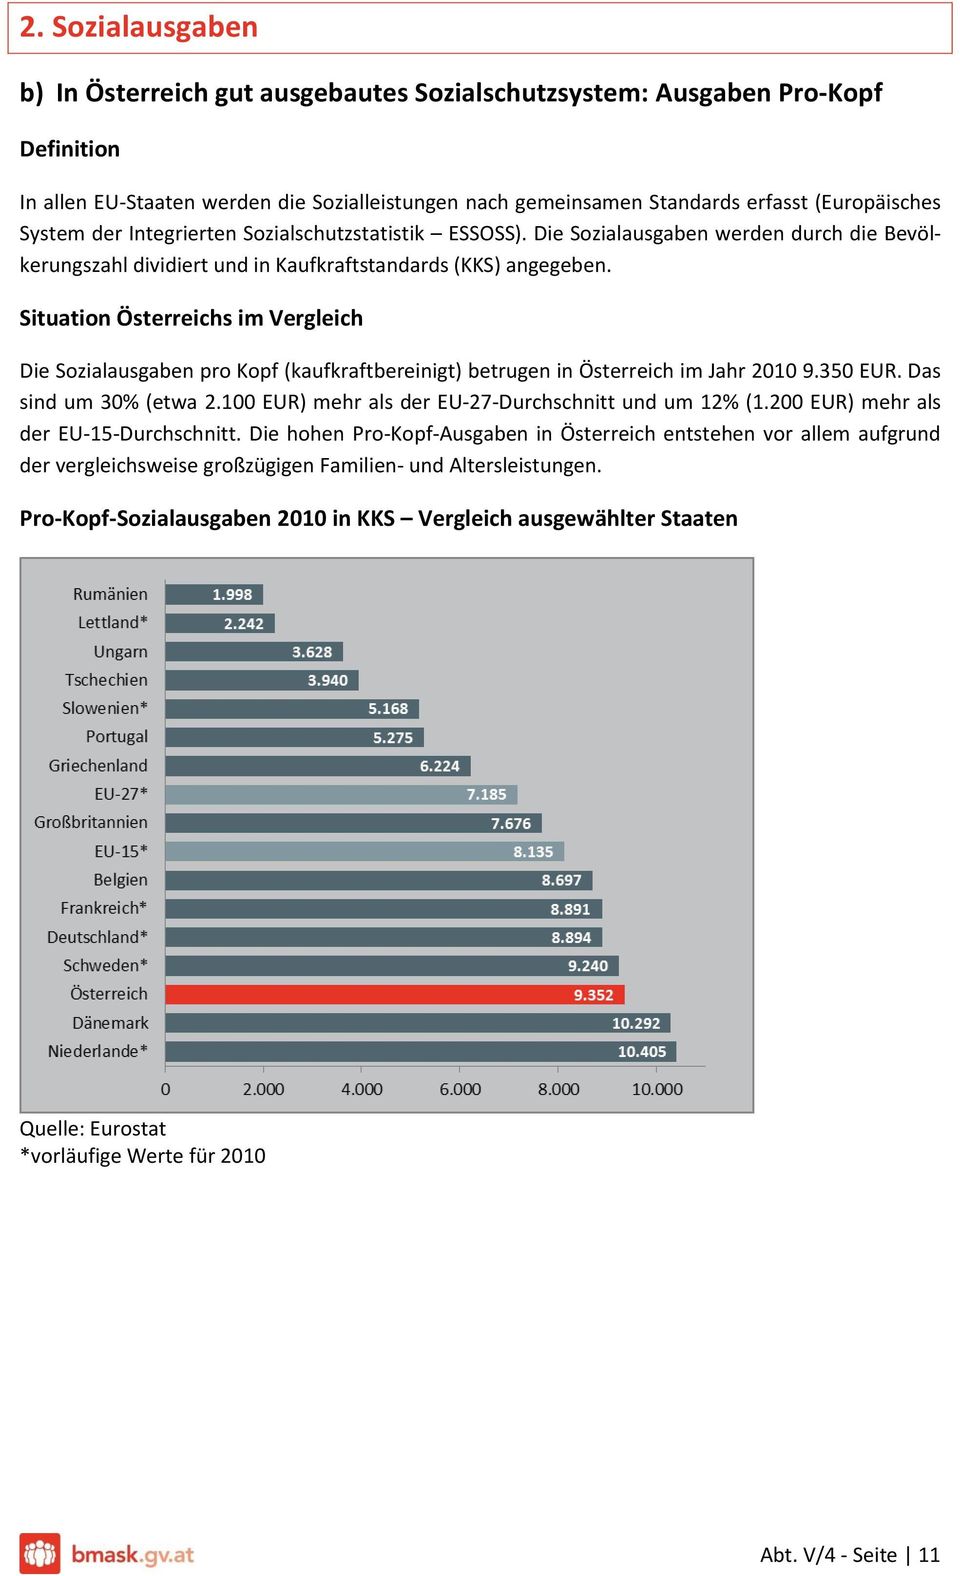 Die Sozialausgaben pro Kopf (kaufkraftbereinigt) betrugen in Österreich im Jahr 2010 9.350 EUR. Das sind um 30% (etwa 2.100 EUR) mehr als der EU-27-Durchschnitt und um 12% (1.